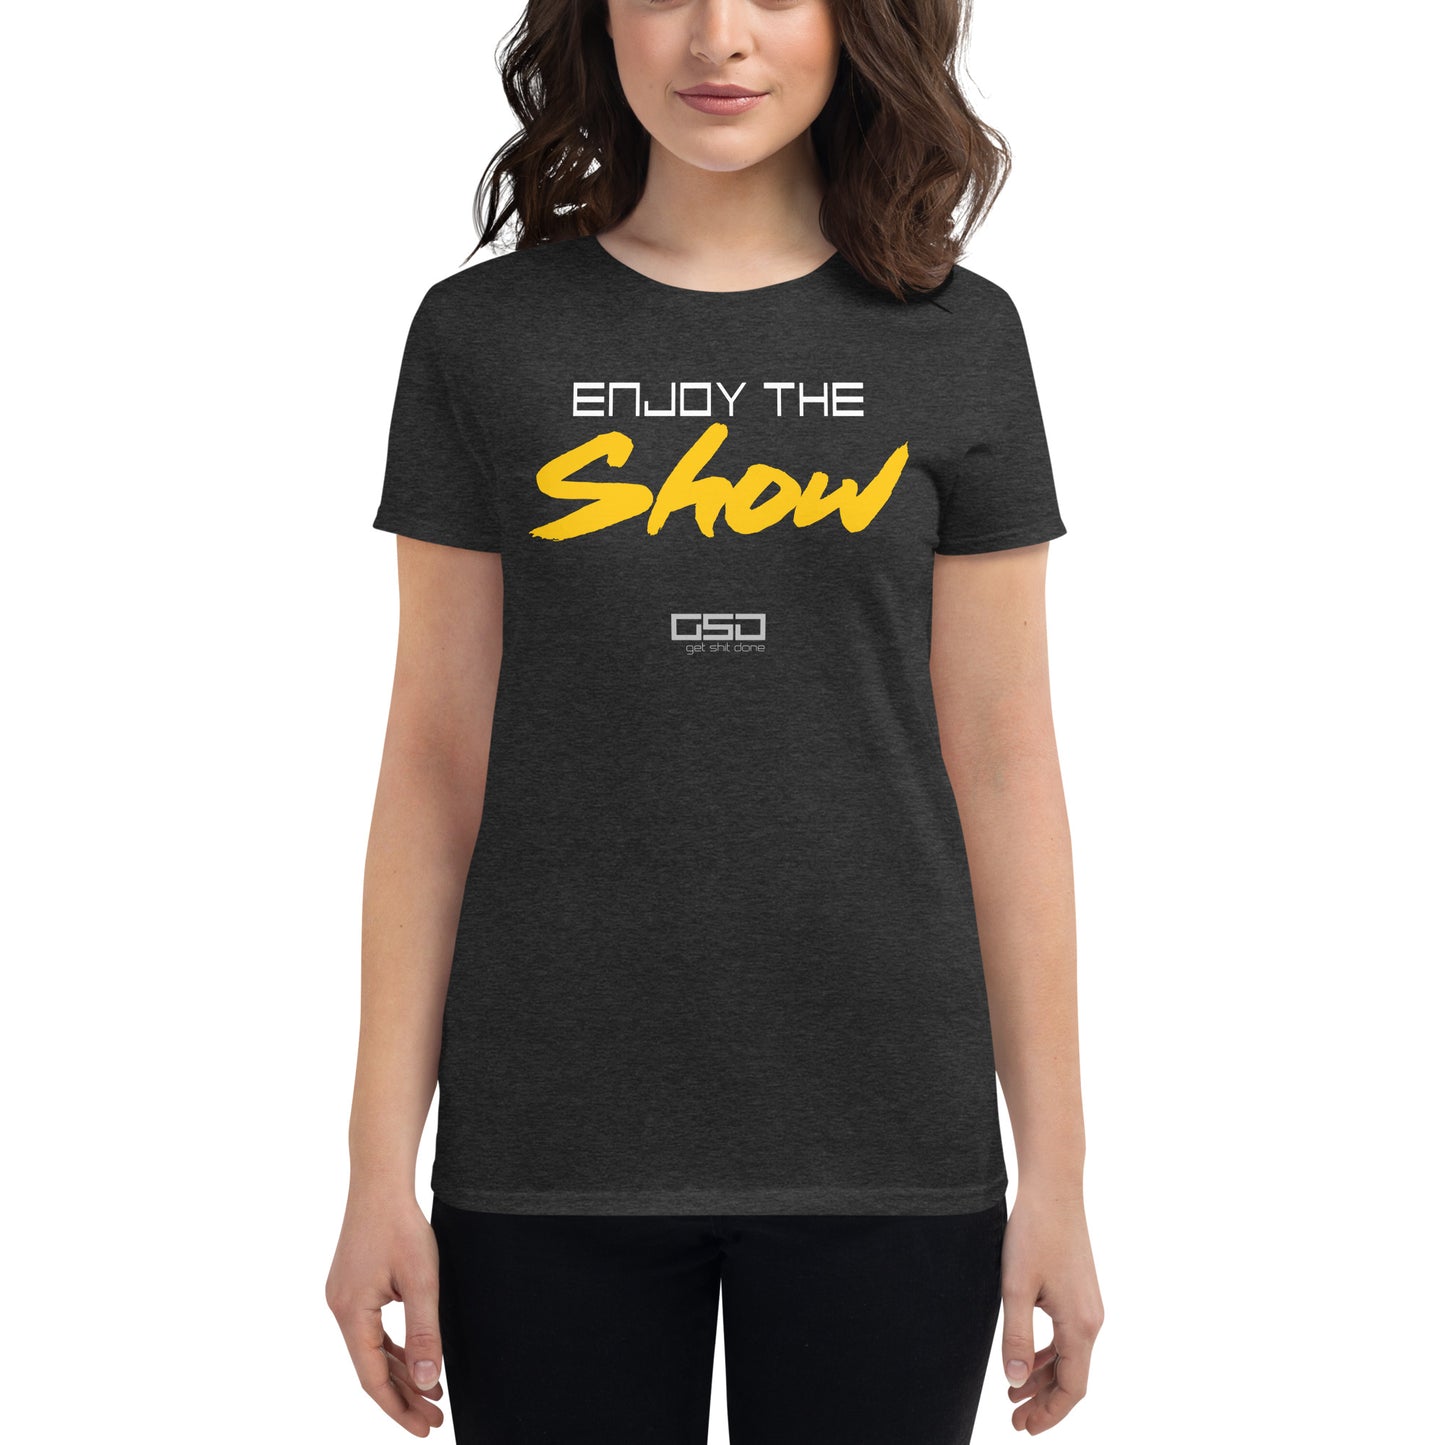 Enjoy The Show-Women's short sleeve t-shirt